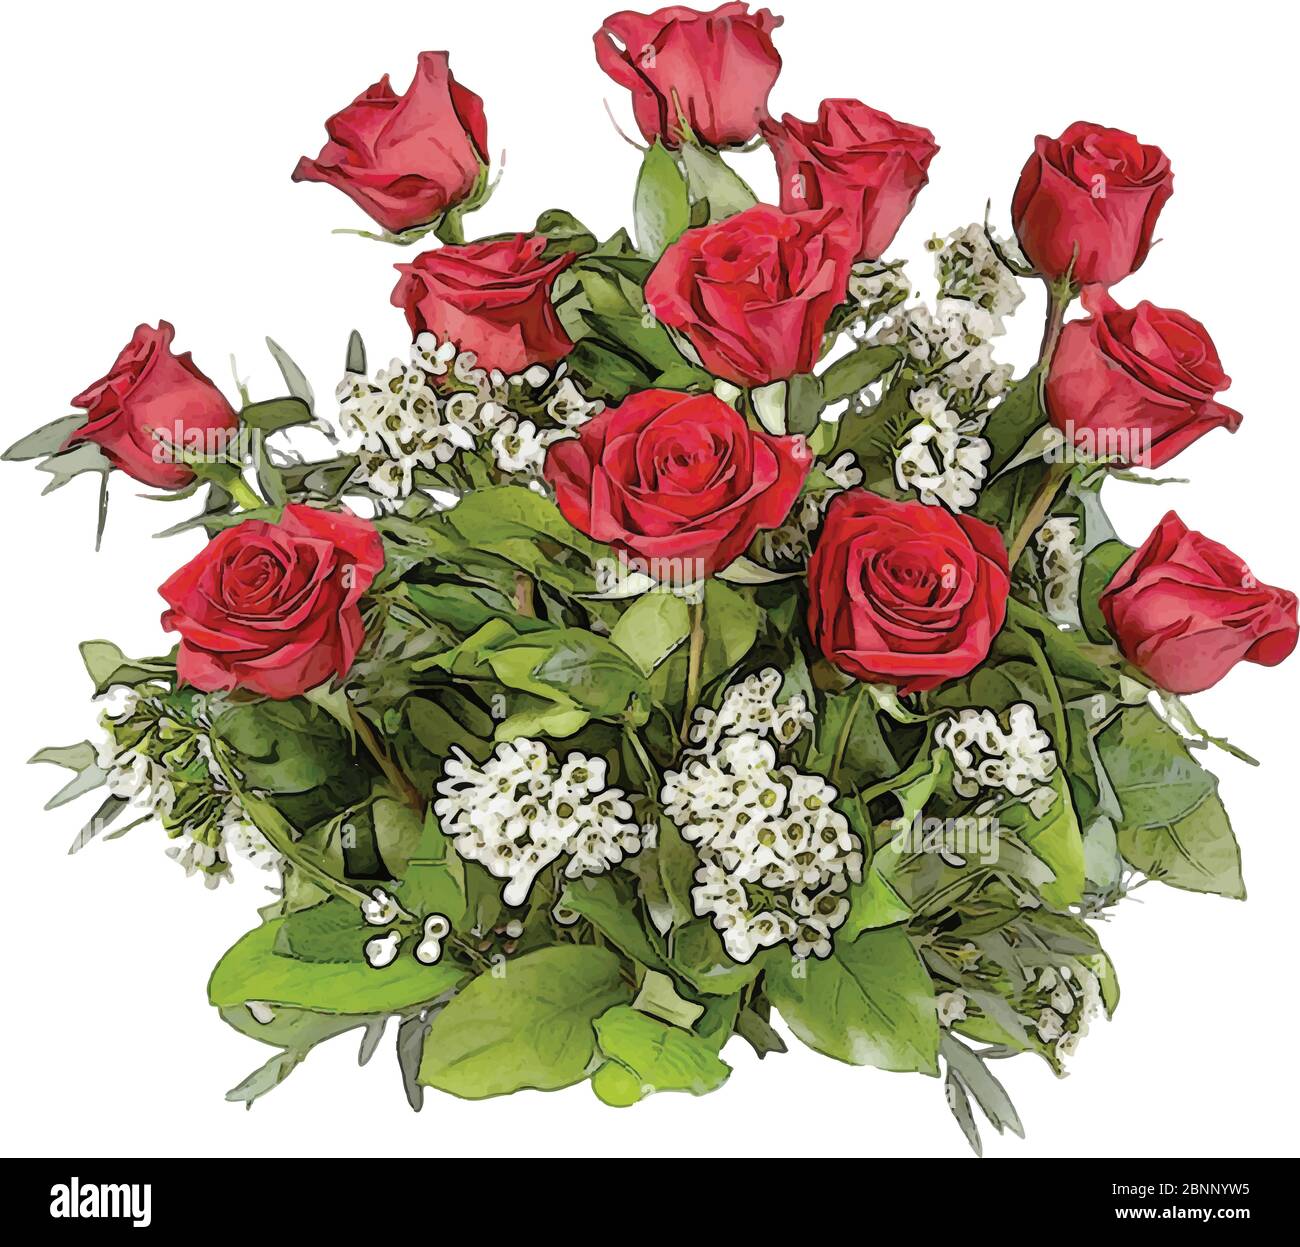 Blumenstrauß von roten Rosen und weißem Flieder Vektor Illustration Stock Vektor